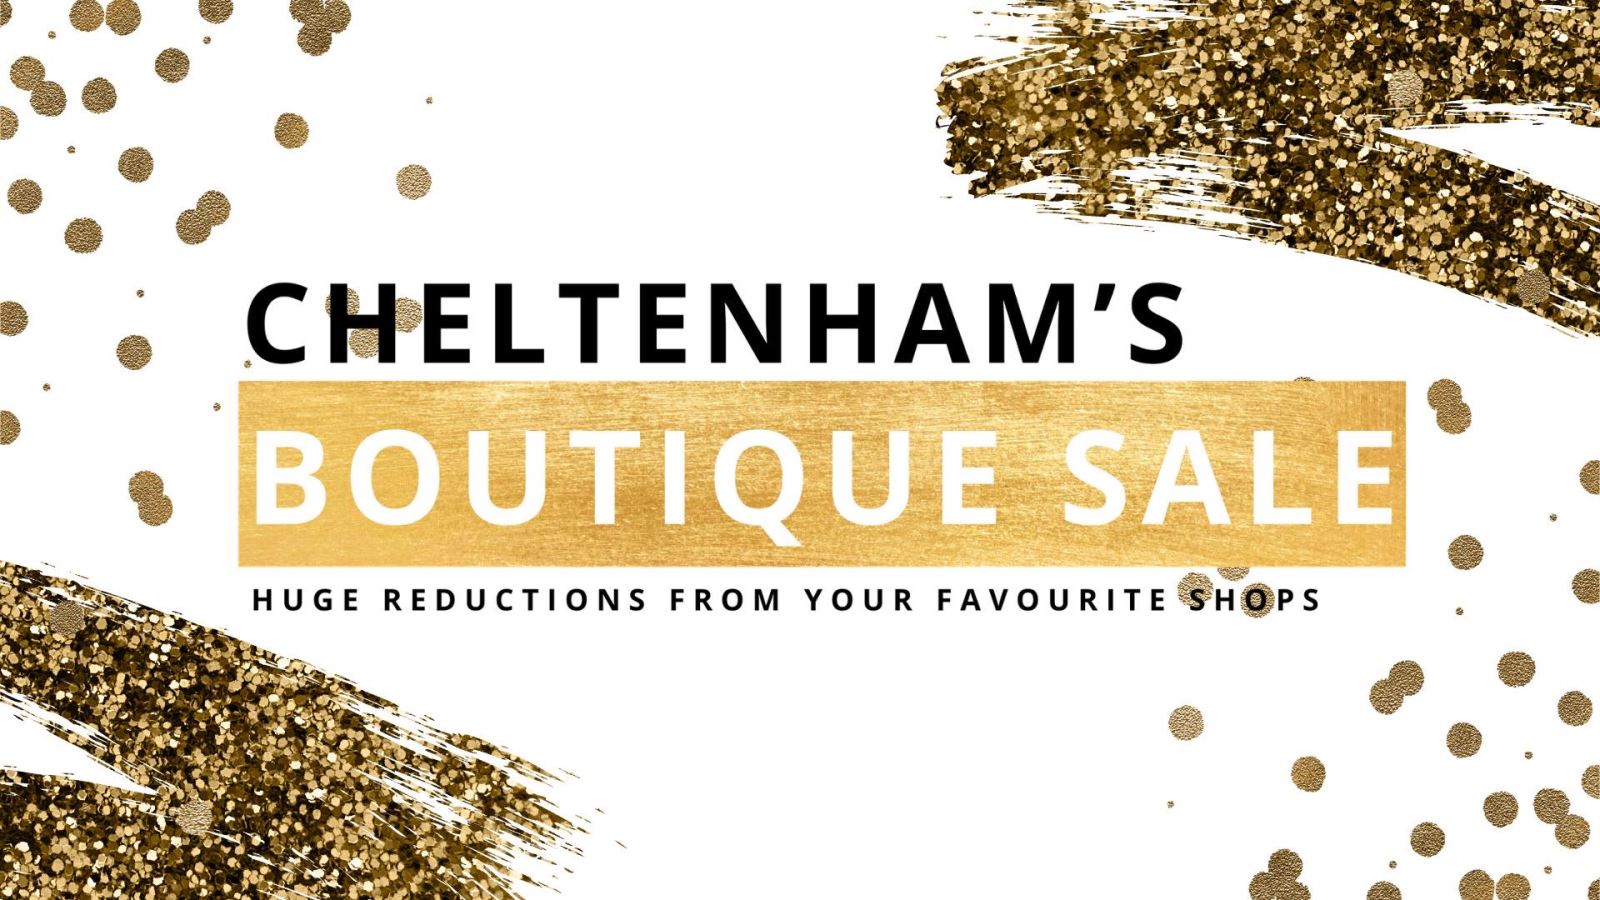 Cheltenham Boutique Sale poster